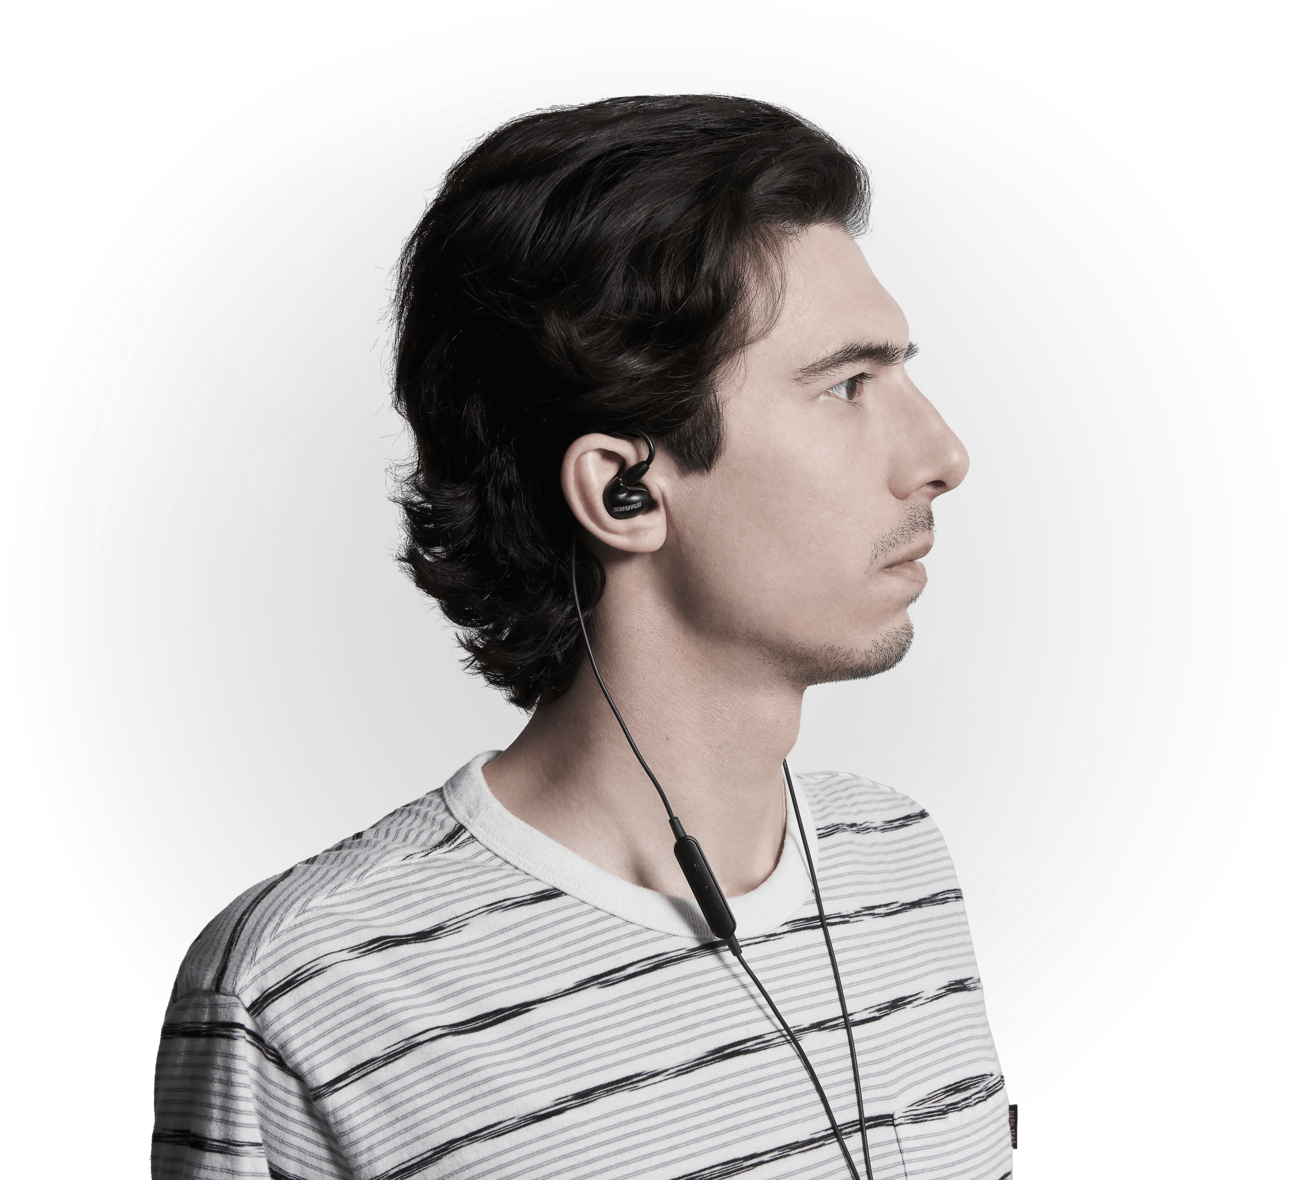 Shure Aonic 5 - Auriculares intrauditivos profesionales con control remoto y micrófono - Devueltos